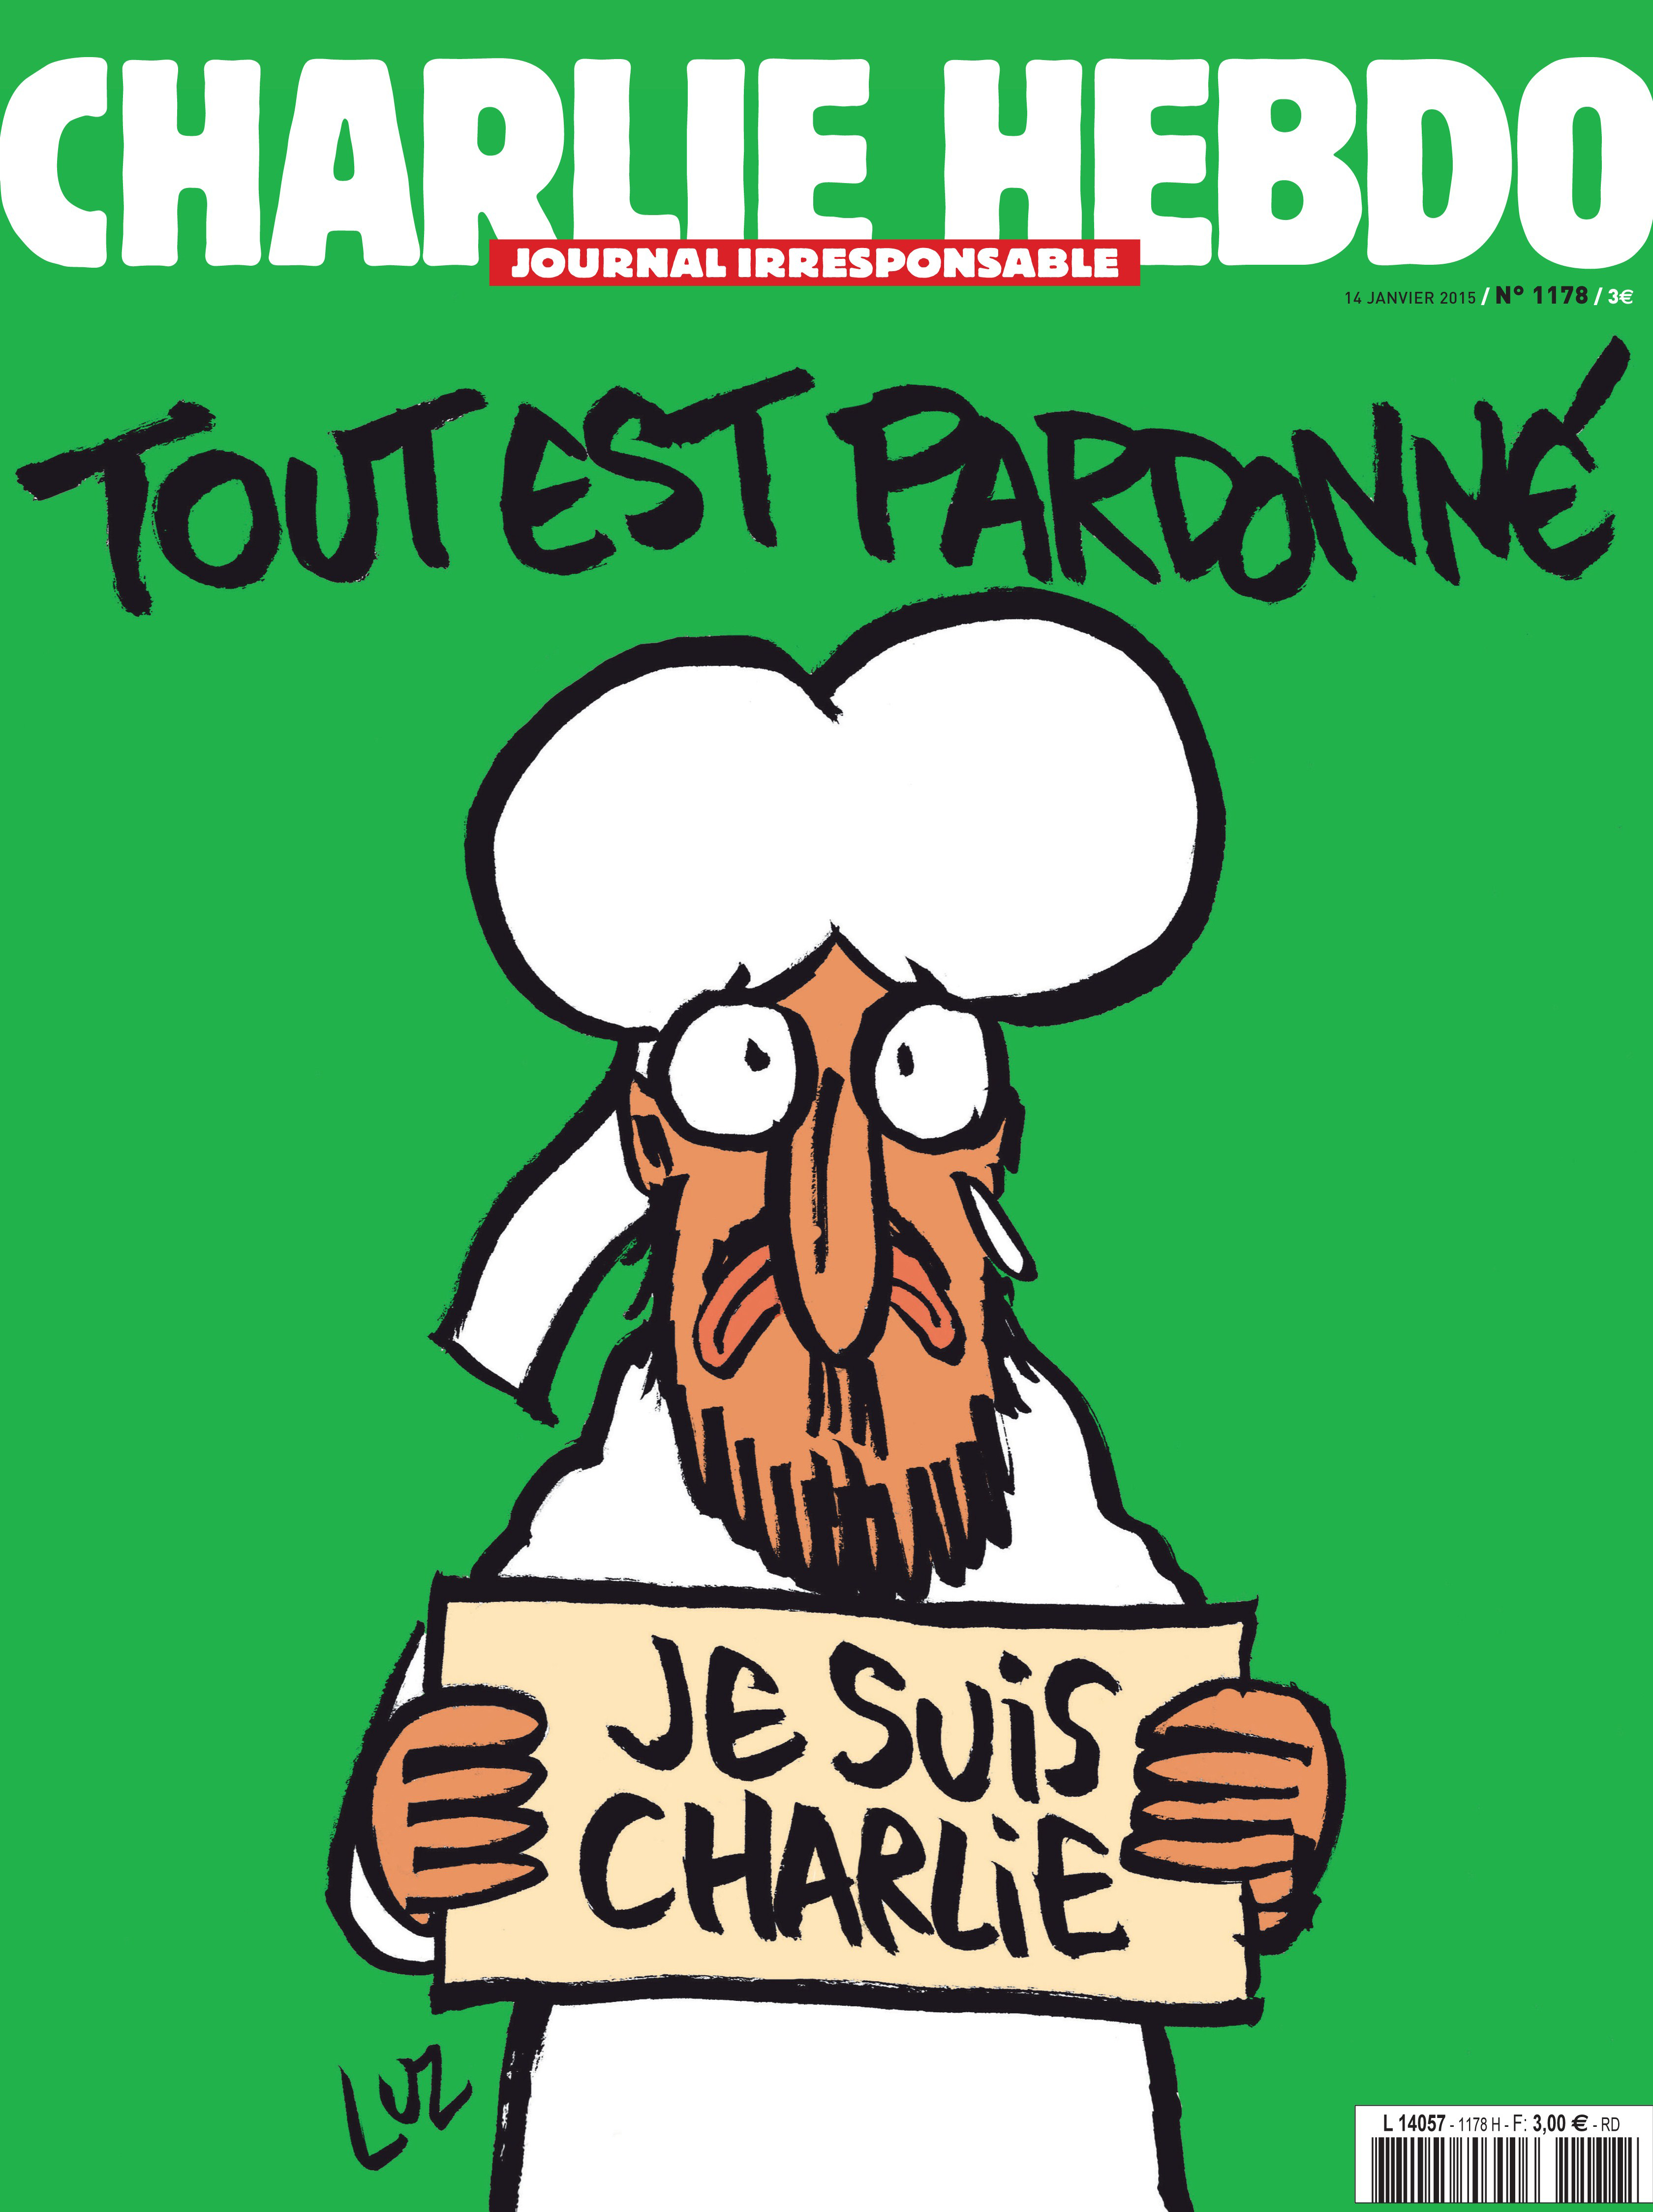 Charlie Hebdo Je Suis Charlie